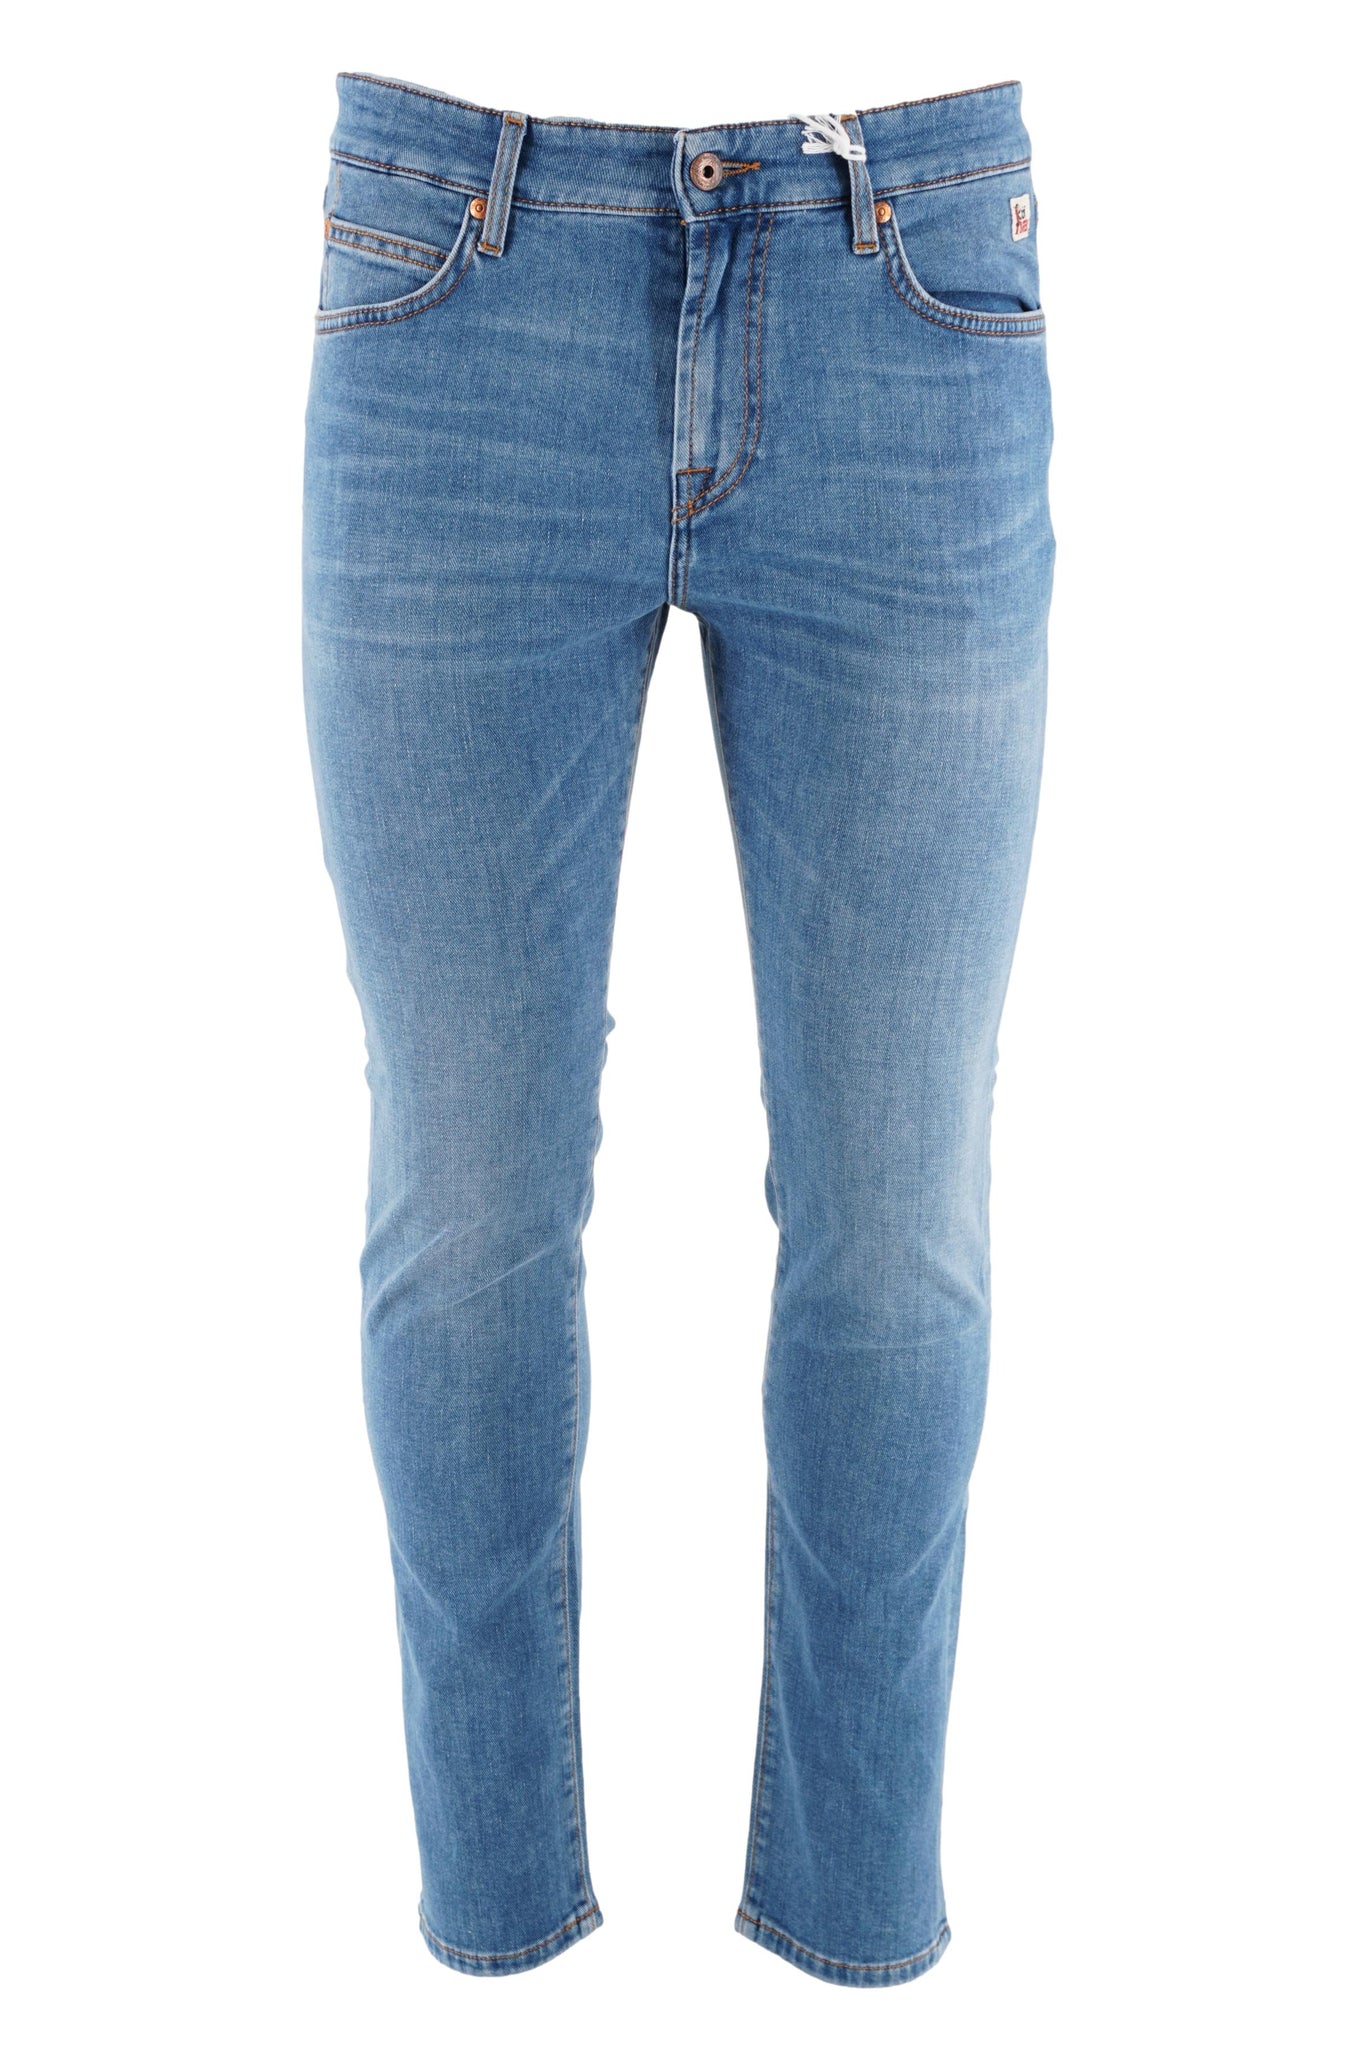 Jeans 517 Lavaggio Medio / Jeans - Ideal Moda